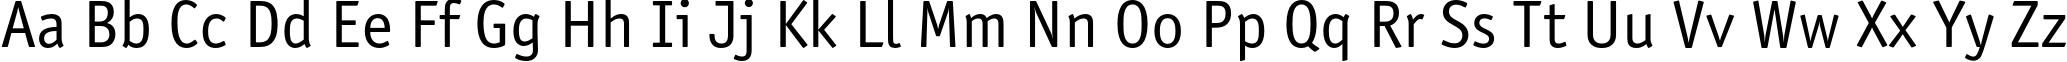 Пример написания английского алфавита шрифтом OfficinaSansC